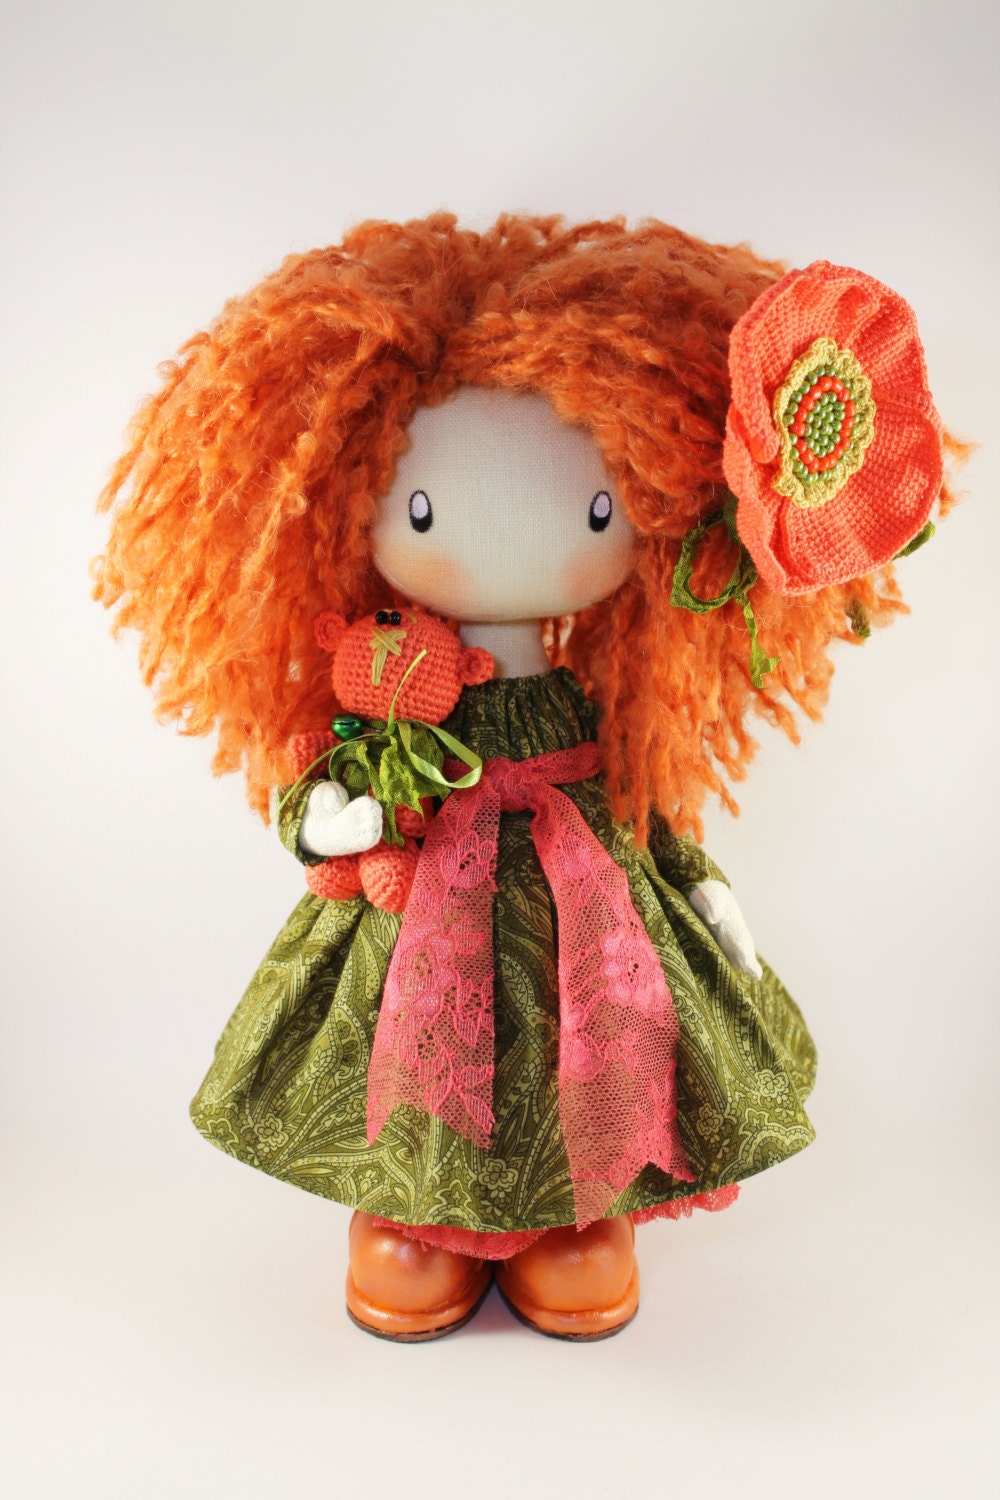  Doll  Ivy redhead textile doll  rag doll  cloth  doll  orange and